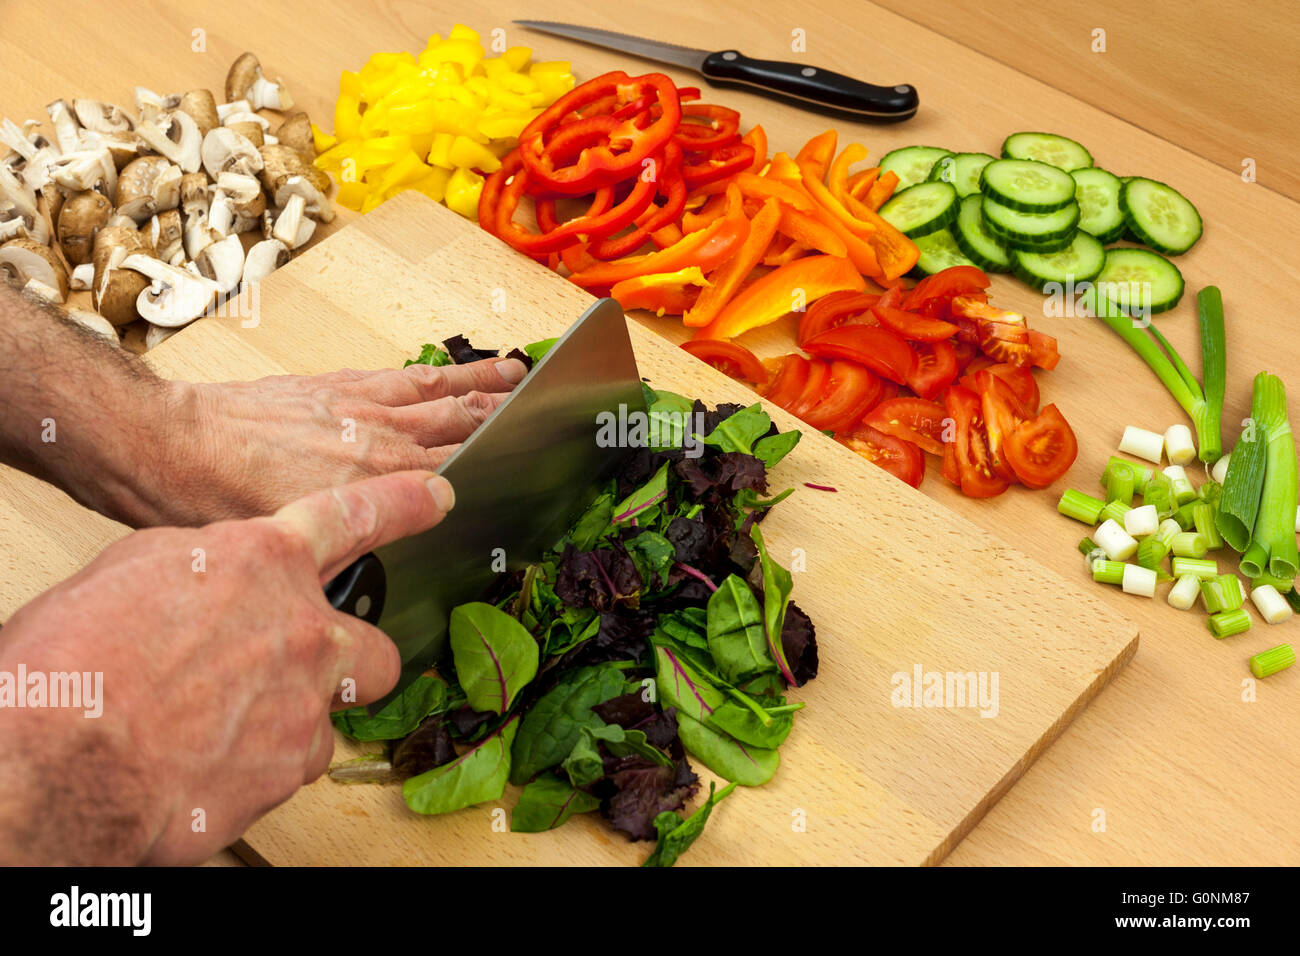 Lo Chef chopping babyleaf alcune foglie di insalata con una mannaia coltello su un tagliere di legno a parte alcune verdure miste Foto Stock